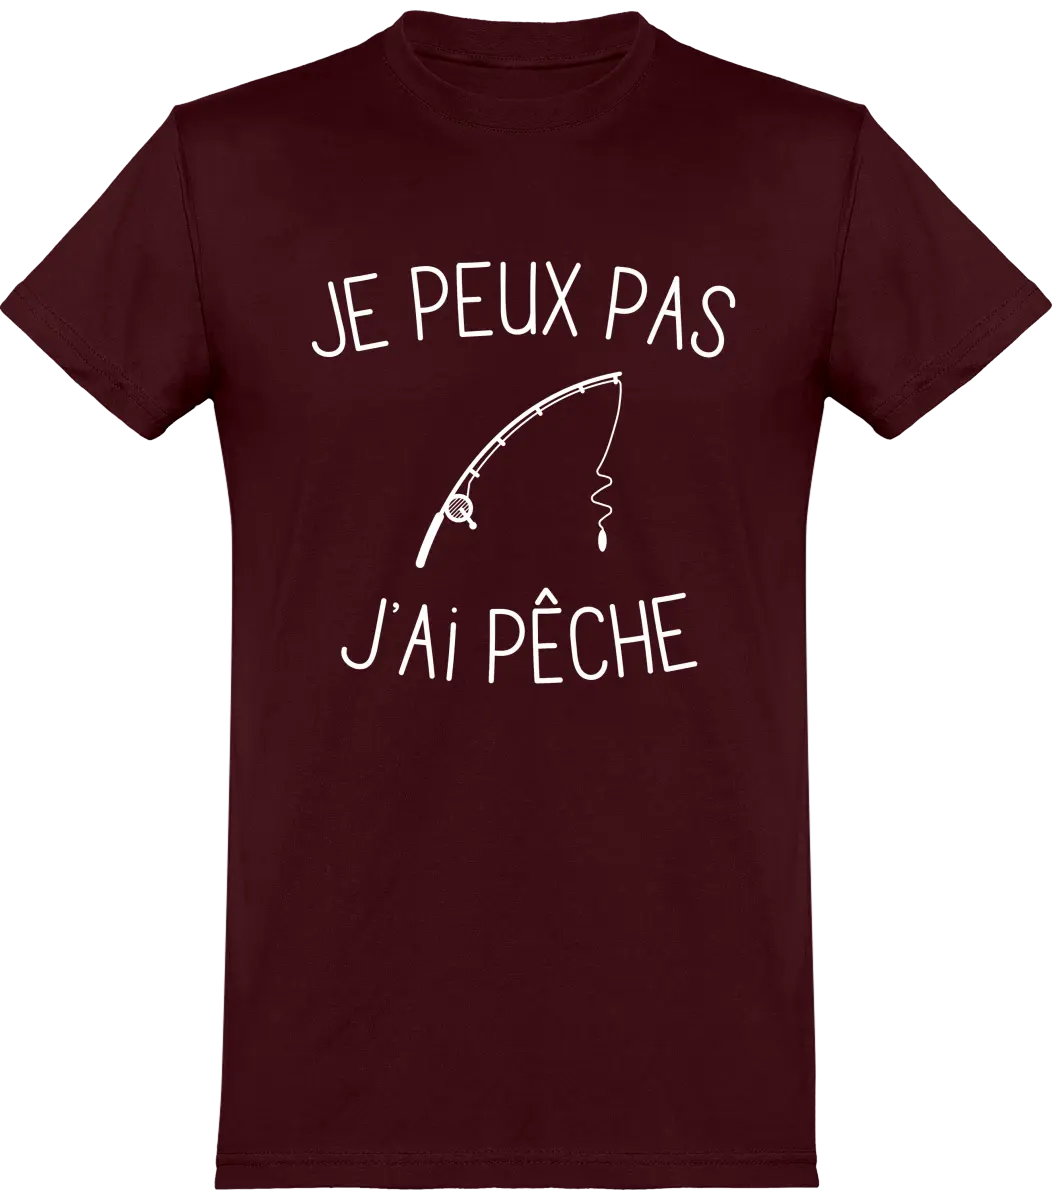 T-shirt pêcheur "Je peux pas j'ai pêche" | Mixte - French Humour